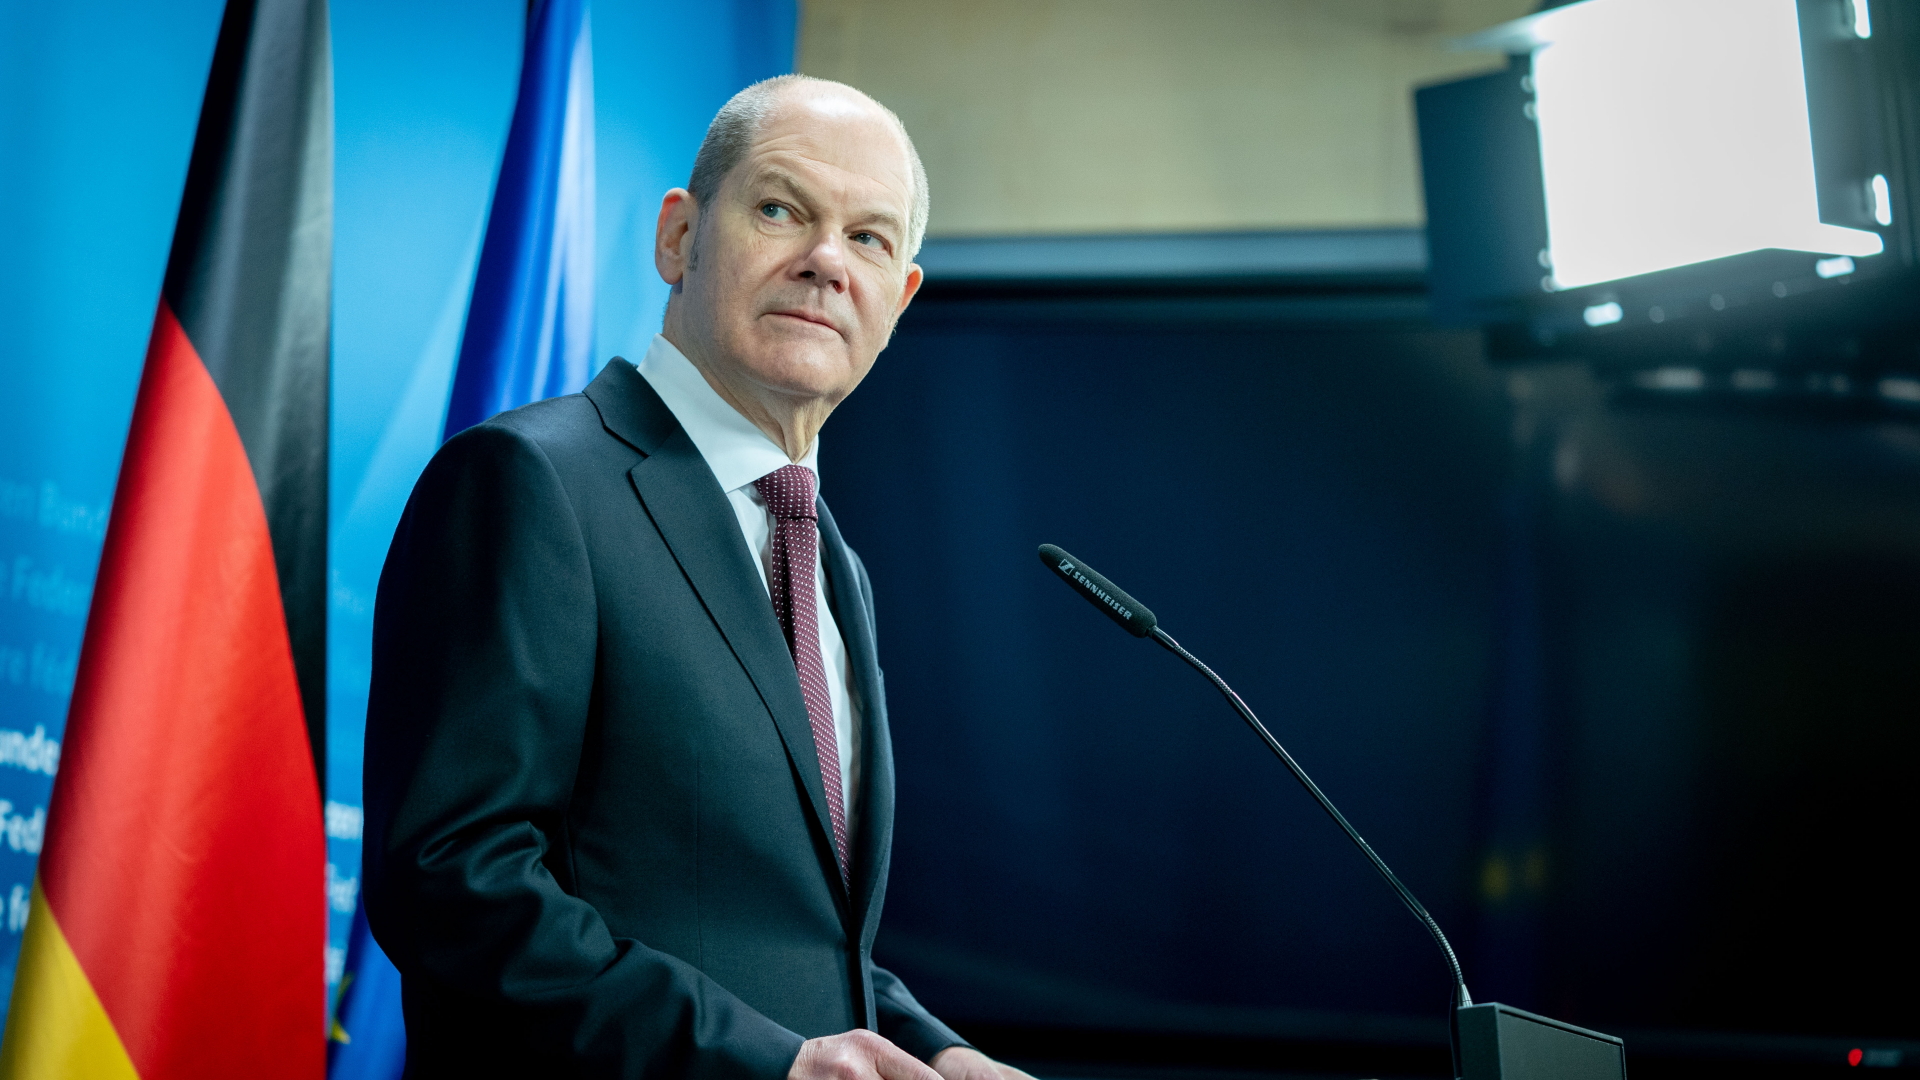 Finanzminister Scholz präsentiert seine Pläne zu Reformm der BaFin. | dpa